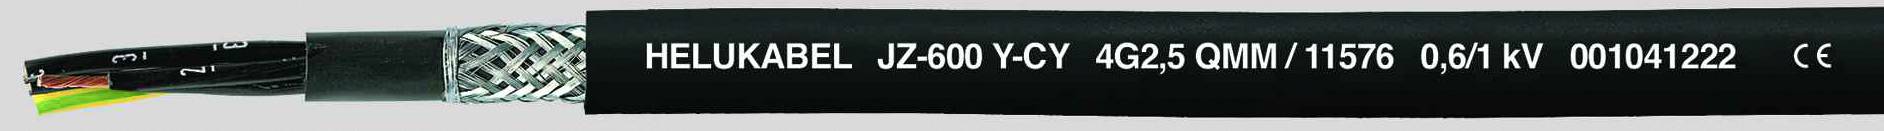 HELUKABEL JZ-600-Y-CY Steuerleitung 3 G 0.50 mm² Schwarz 11465-500 500 m